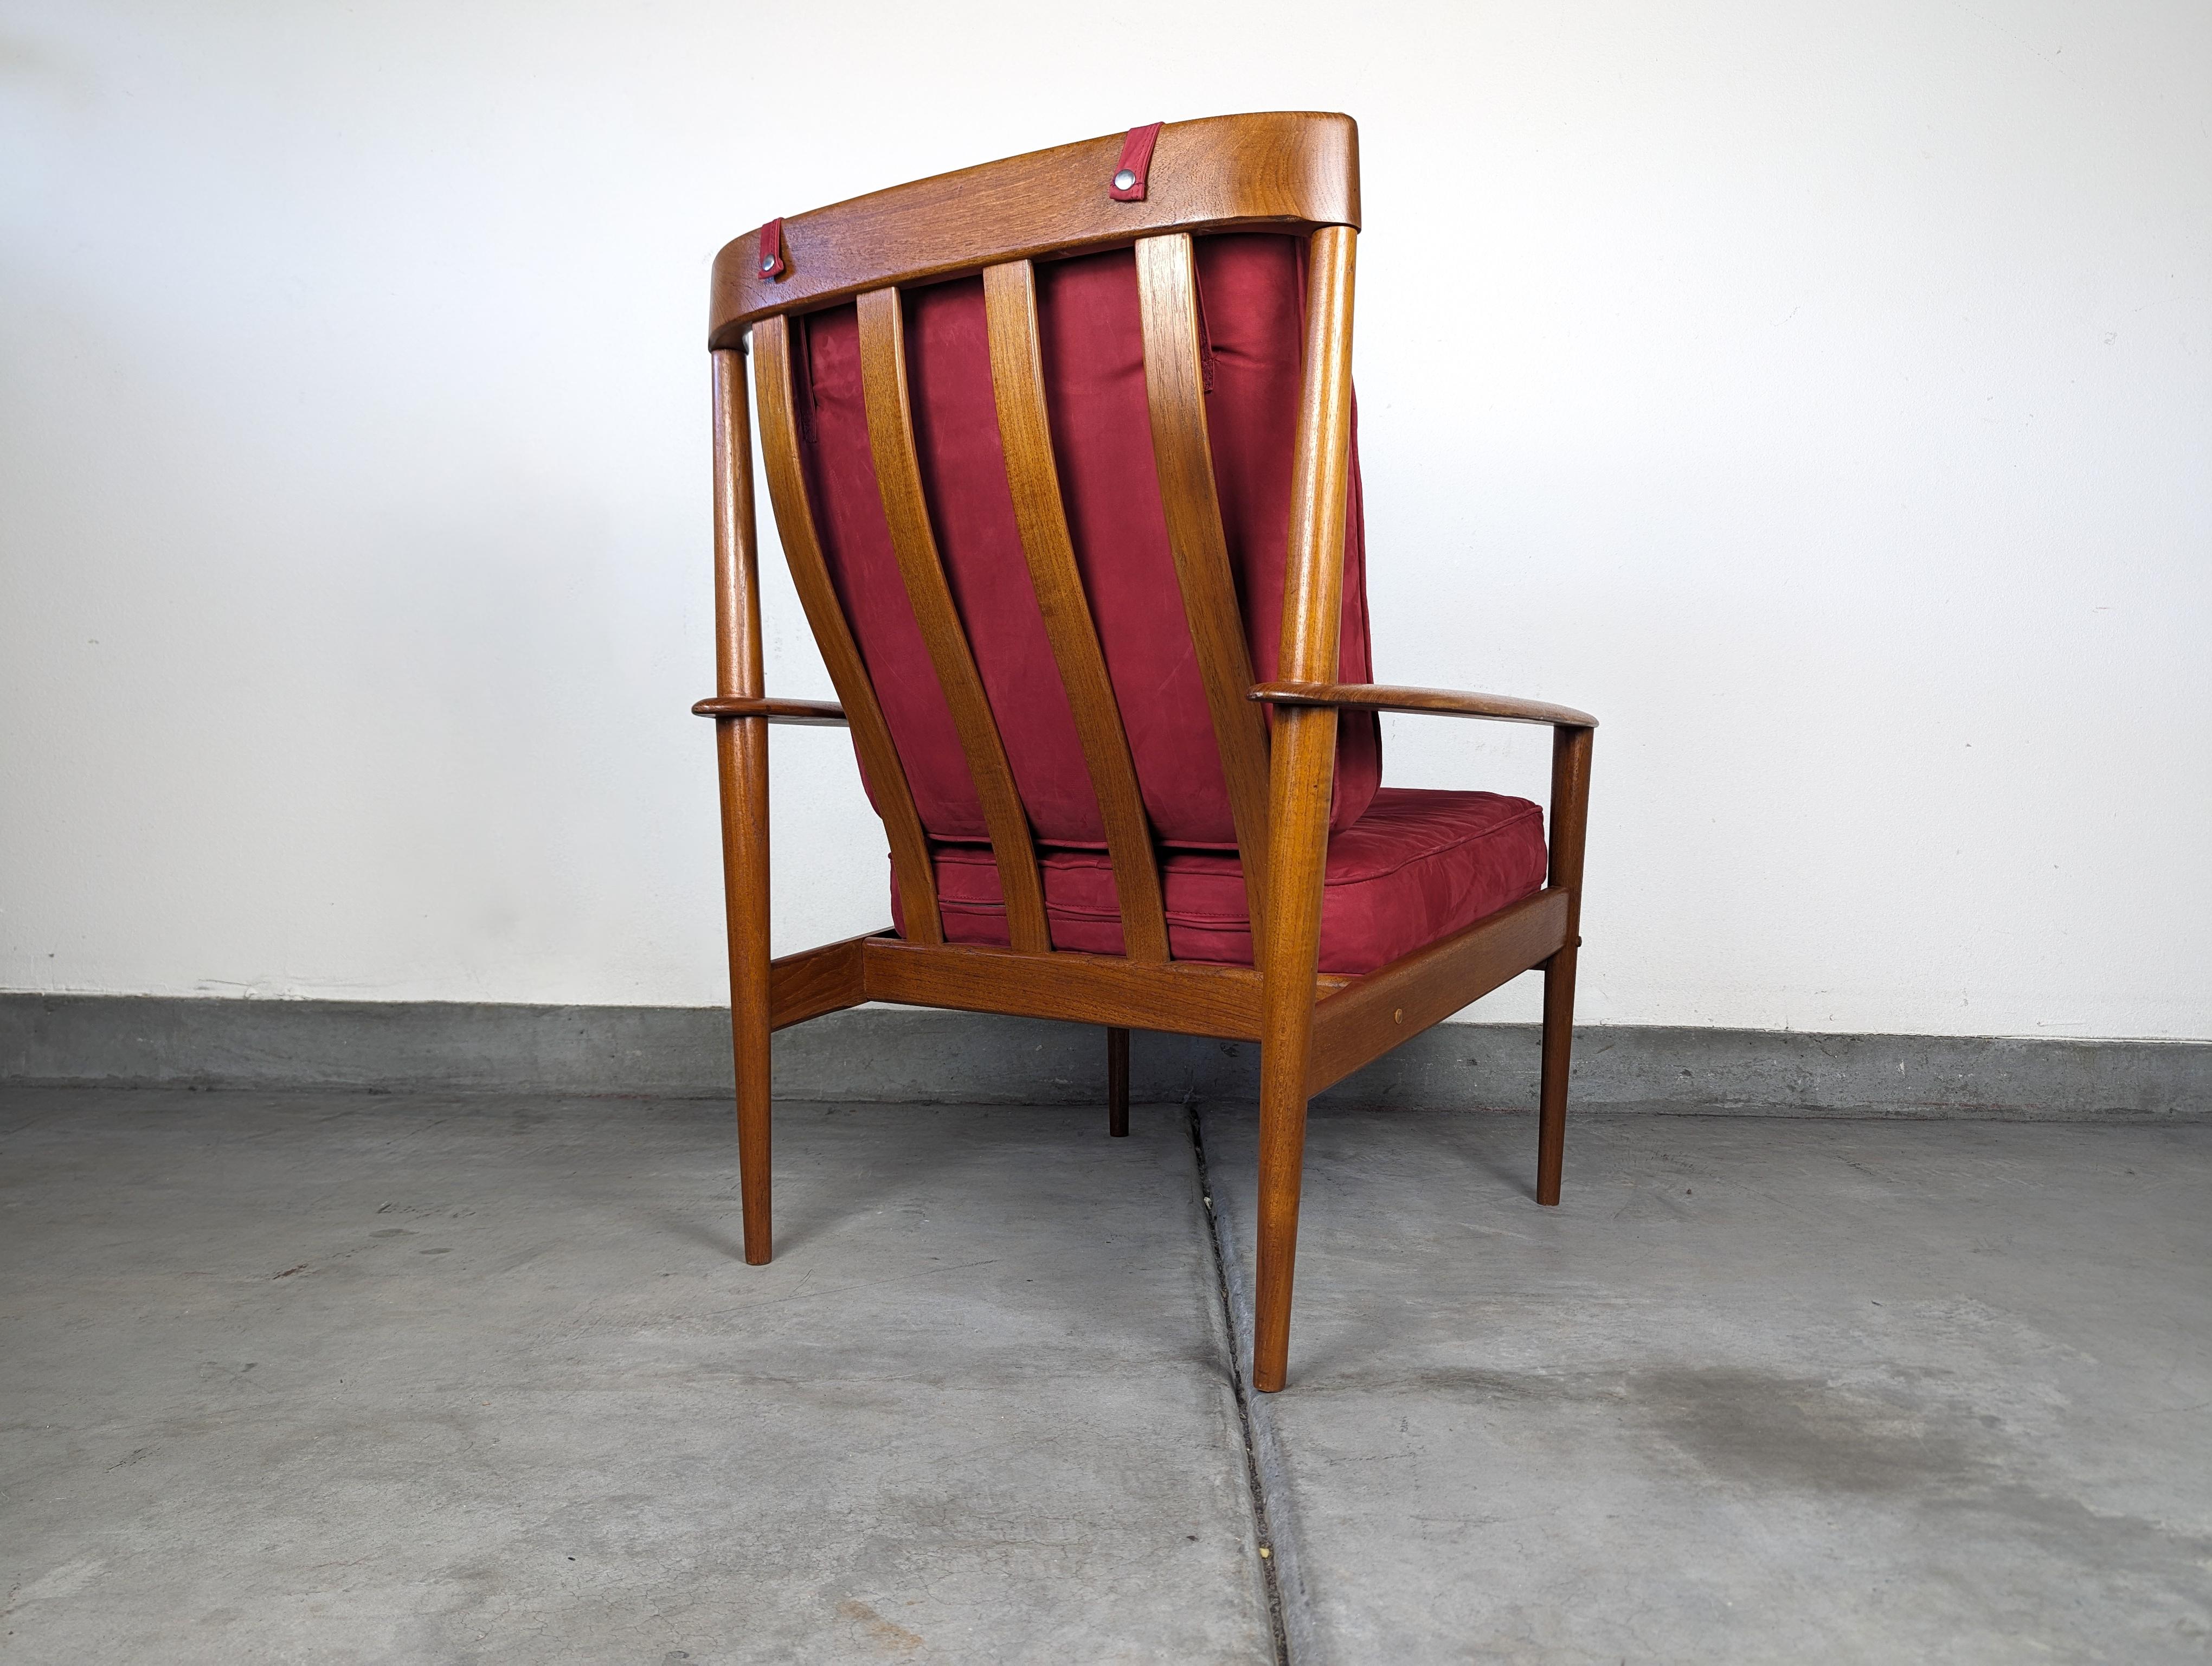 Cette chaise de salon emblématique de la modernité du milieu du siècle a été conçue par la célèbre designer danoise Grete Jalk pour Poul Jeppesens Møbelfabrik. Il s'agit du modèle à dossier haut PJ56, très recherché, datant des années 1960.